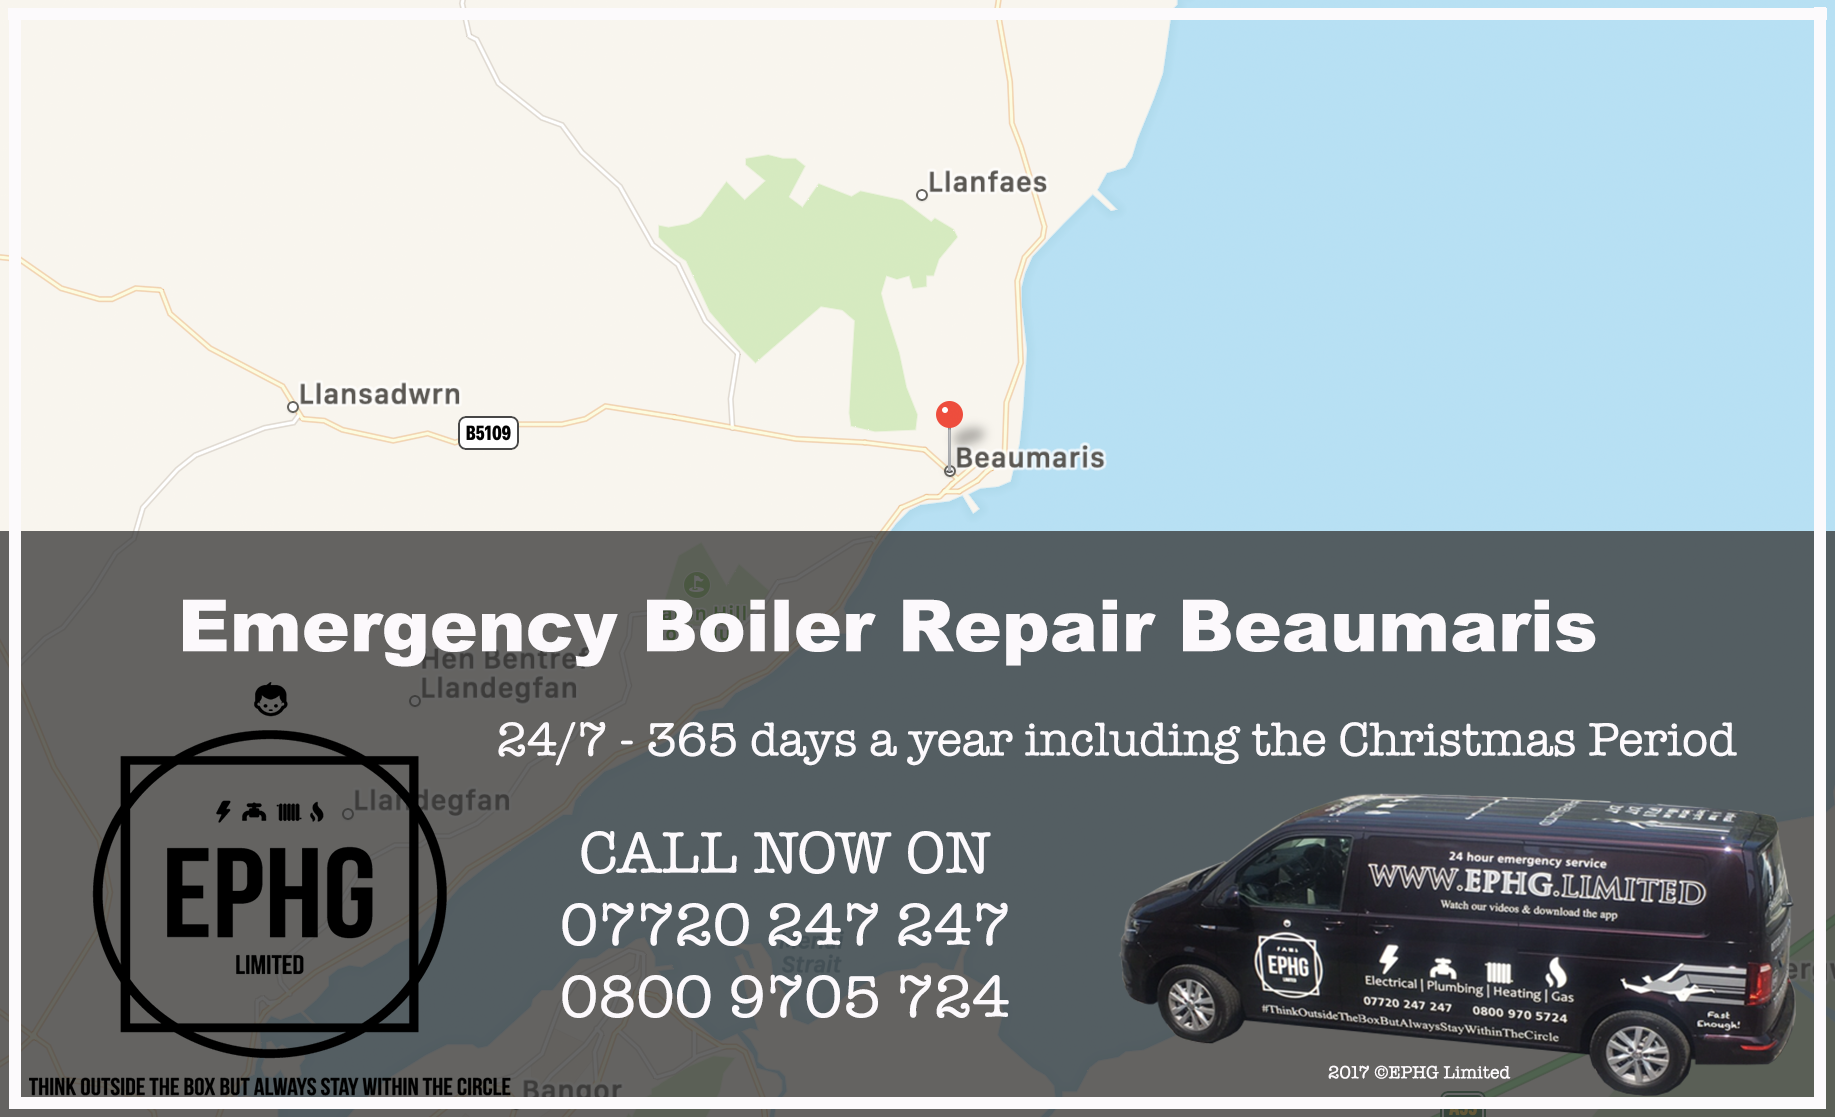 24 Hour Emergency Boiler Repair Beaumaris